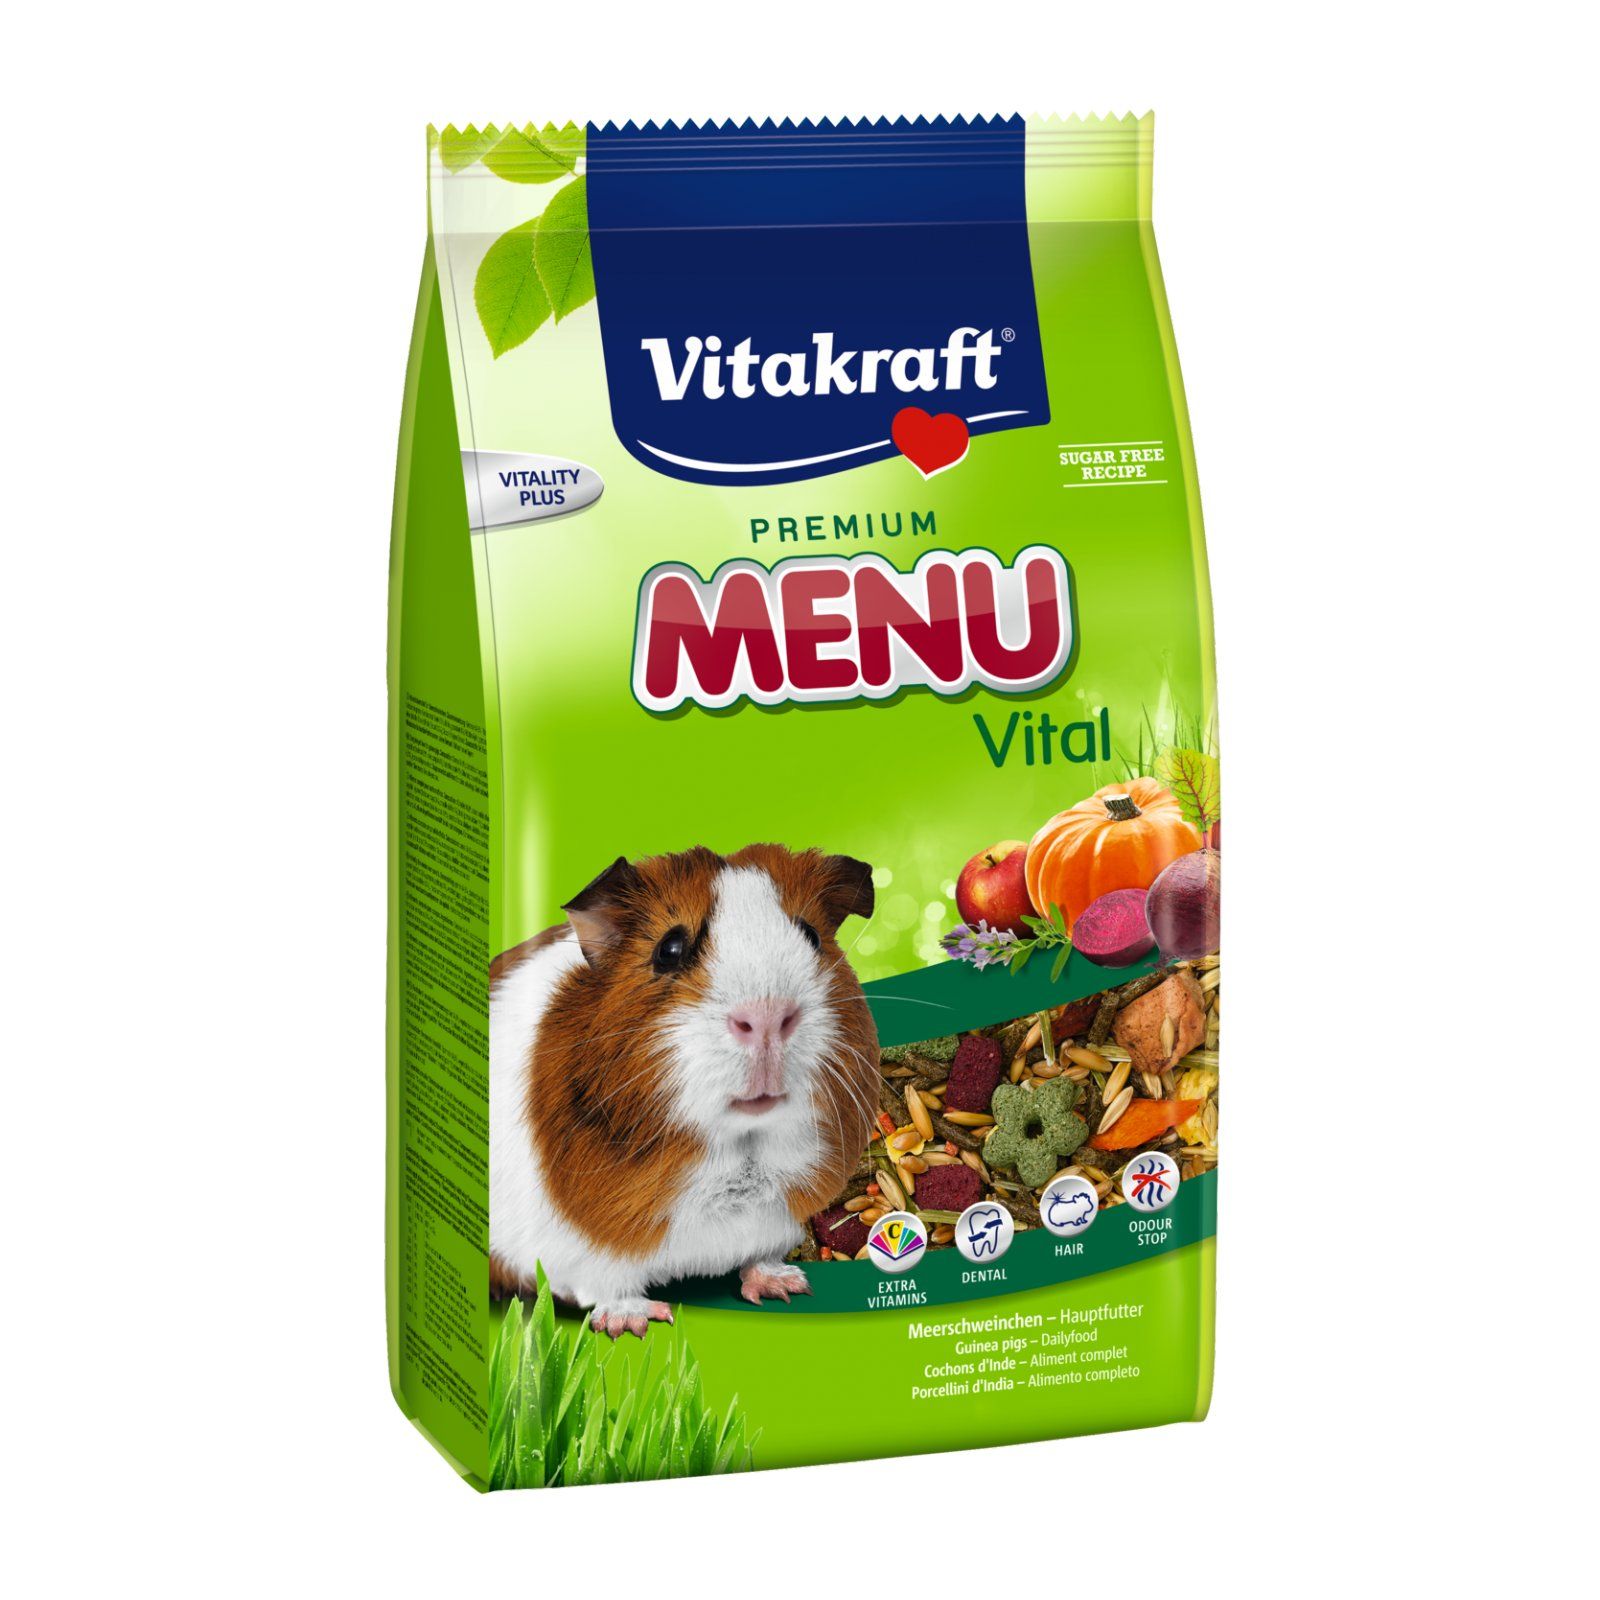 Vitakraft Premium Menü Vital, Futter für Meerschweinchen